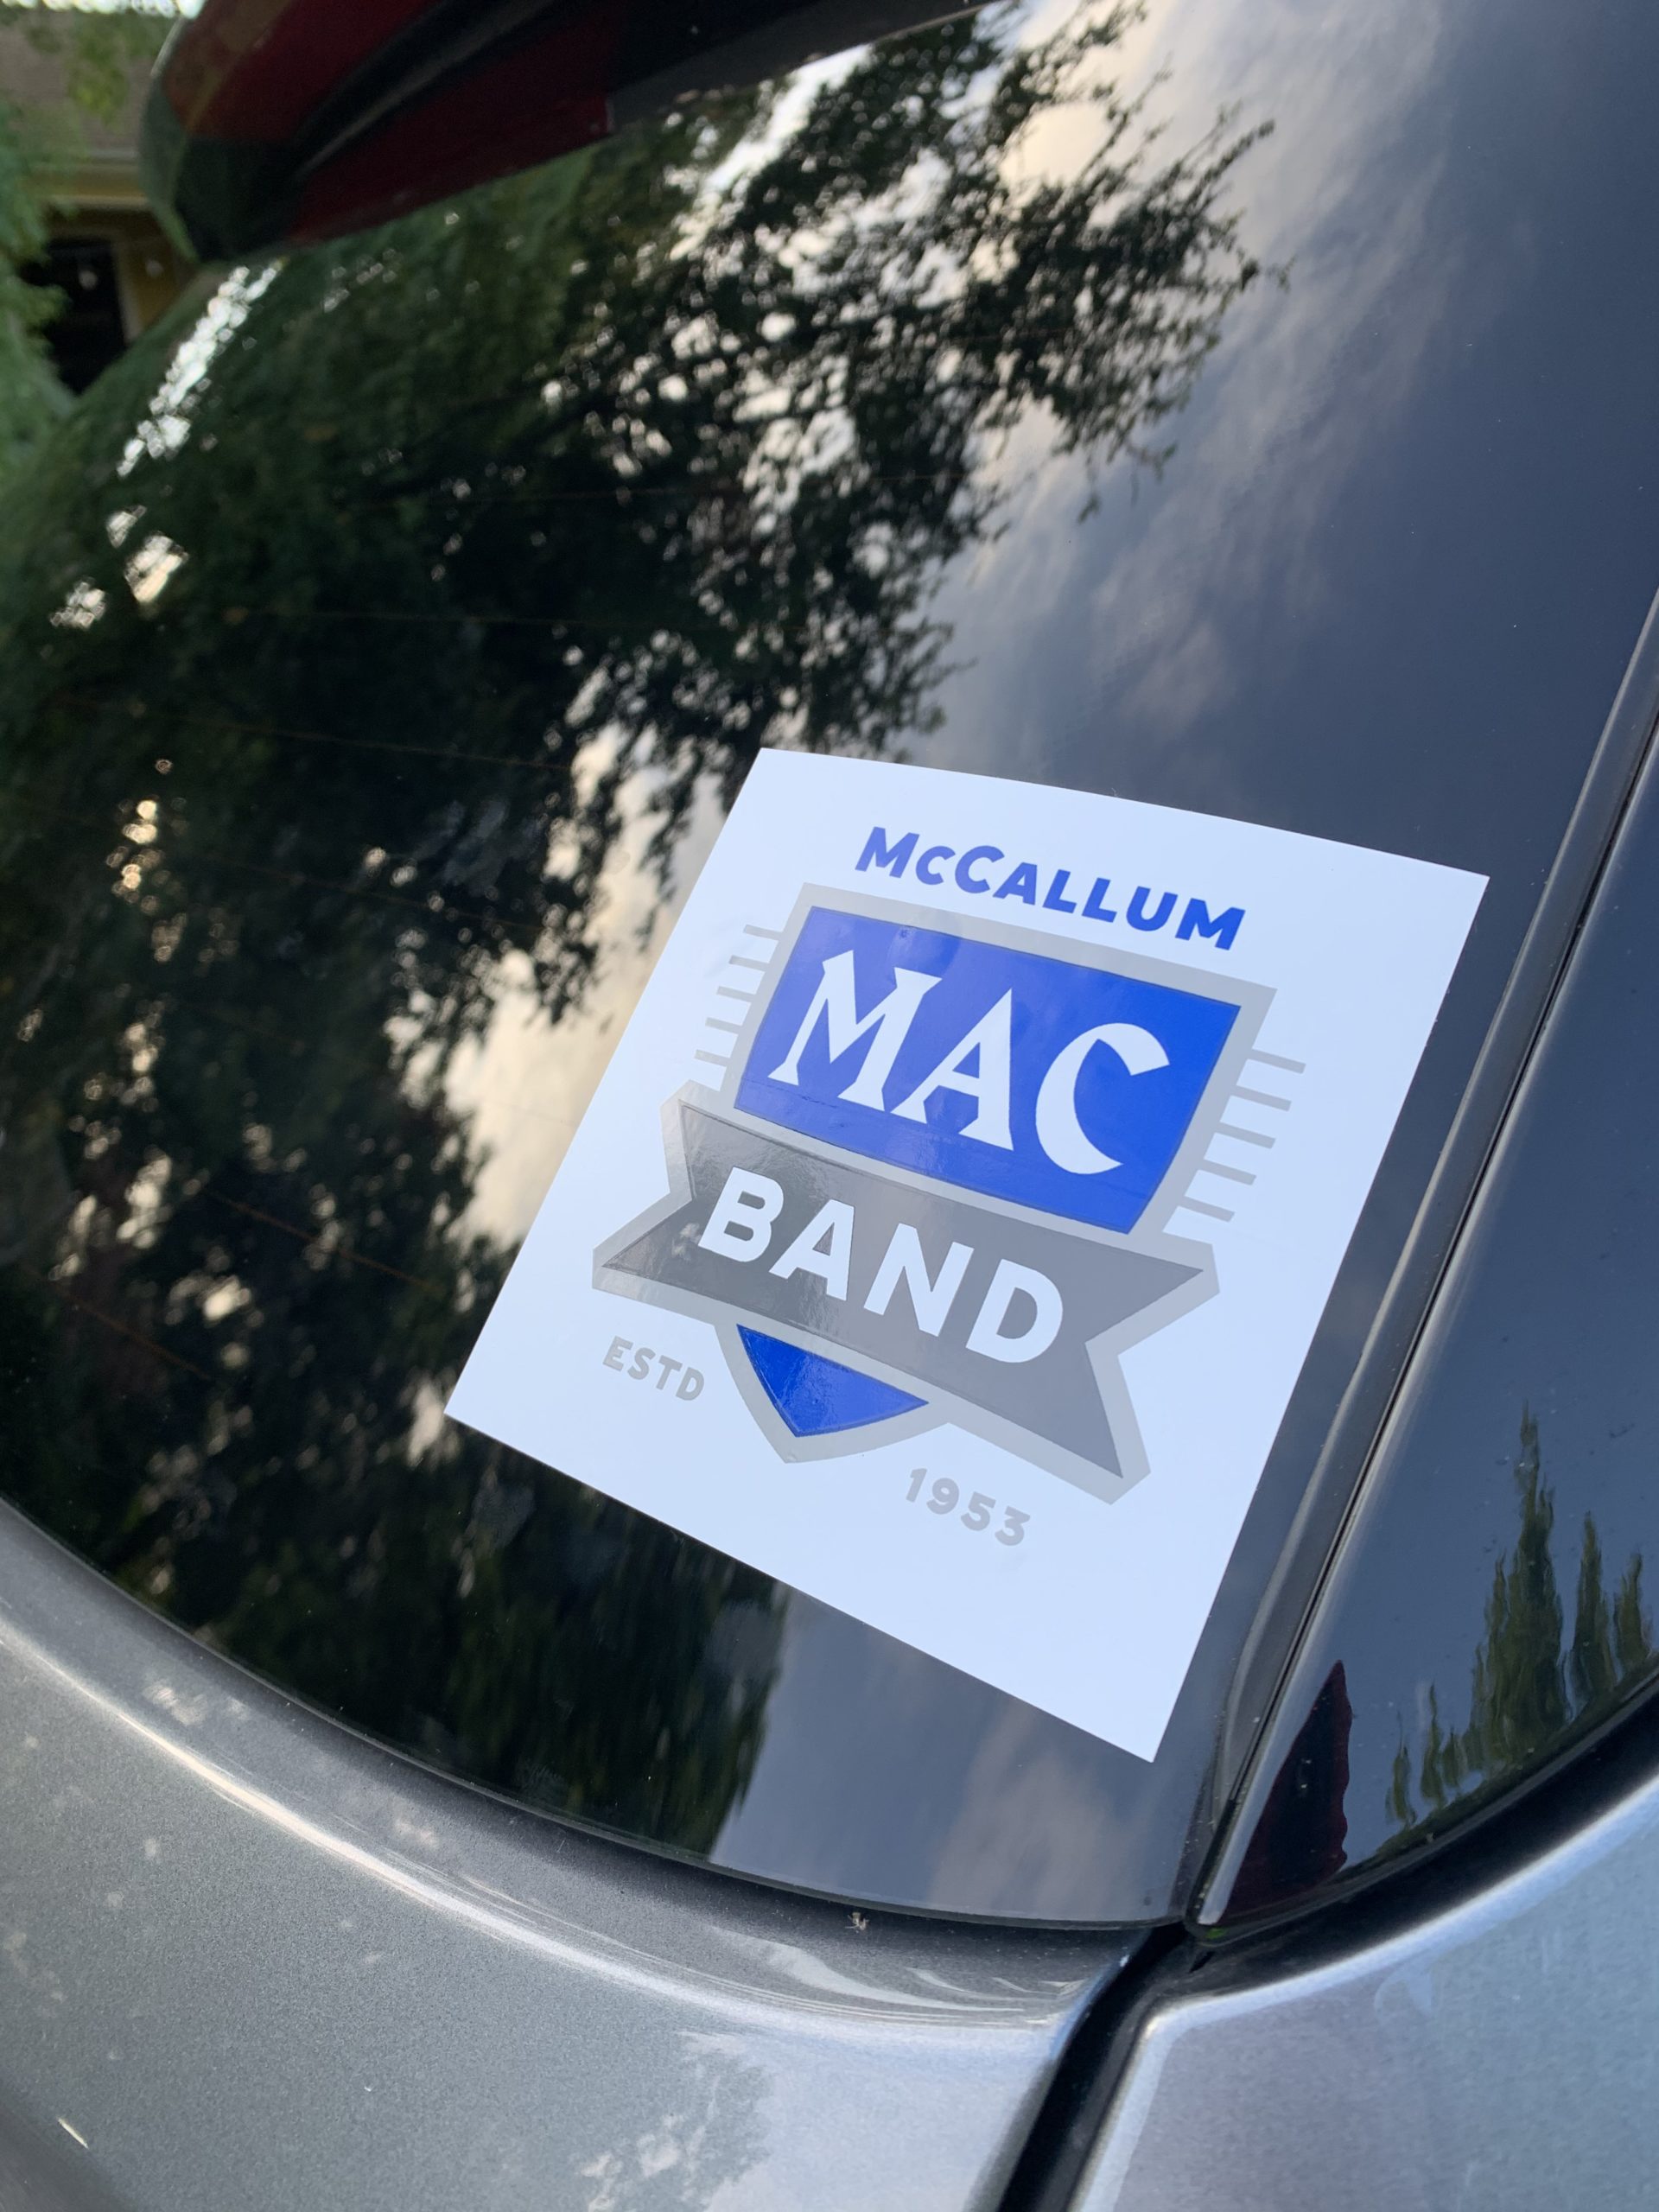 Mac band bumper sticker